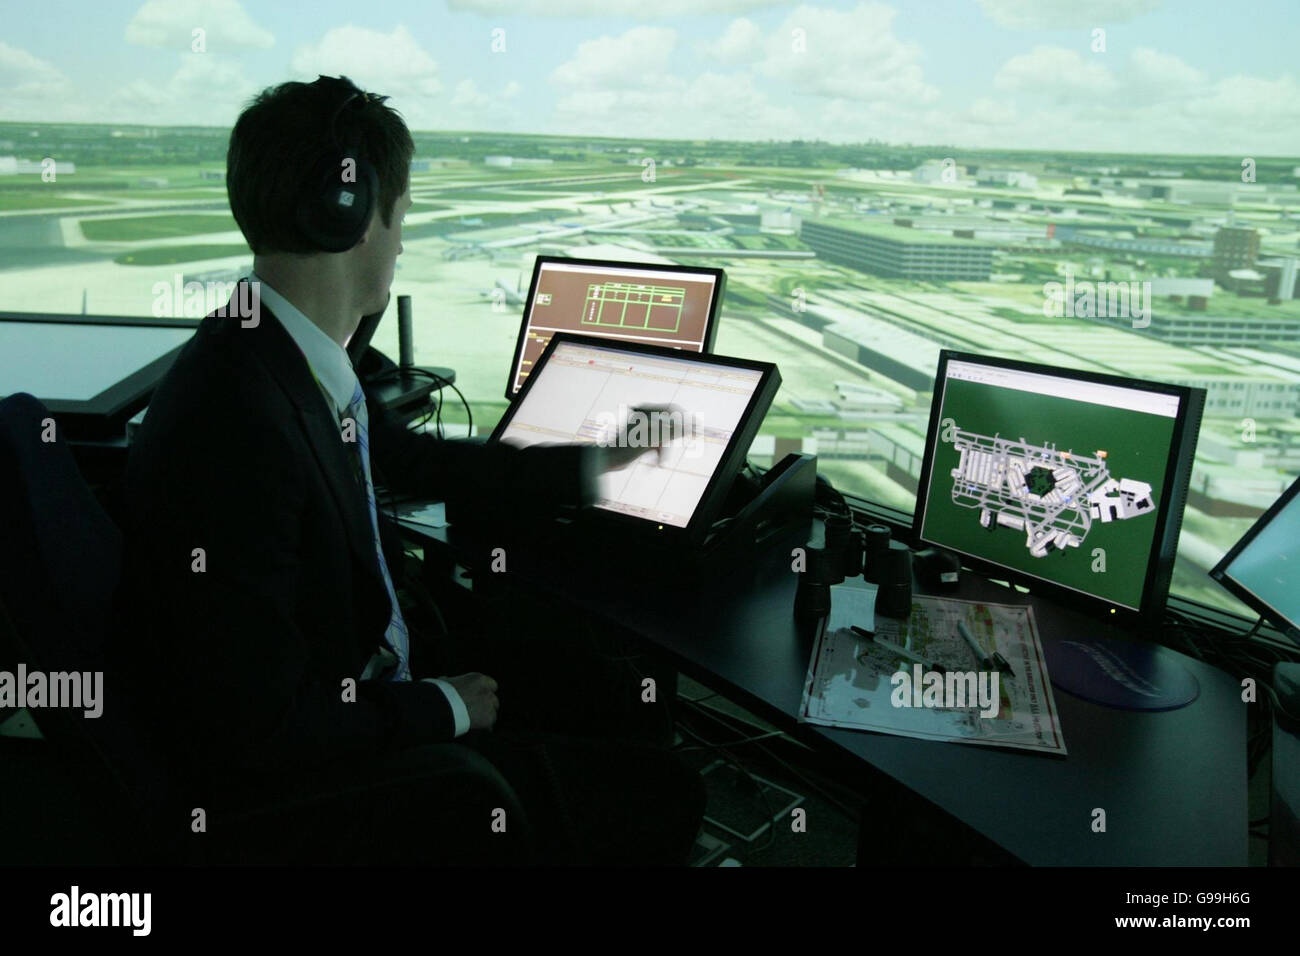 Dale Reeson, un controllore del traffico aereo, si trova nel nuovo simulatore della Torre di controllo di Heathrow a 360 gradi nella Torre di controllo del traffico aereo dell'aeroporto di Heathrow. Foto Stock